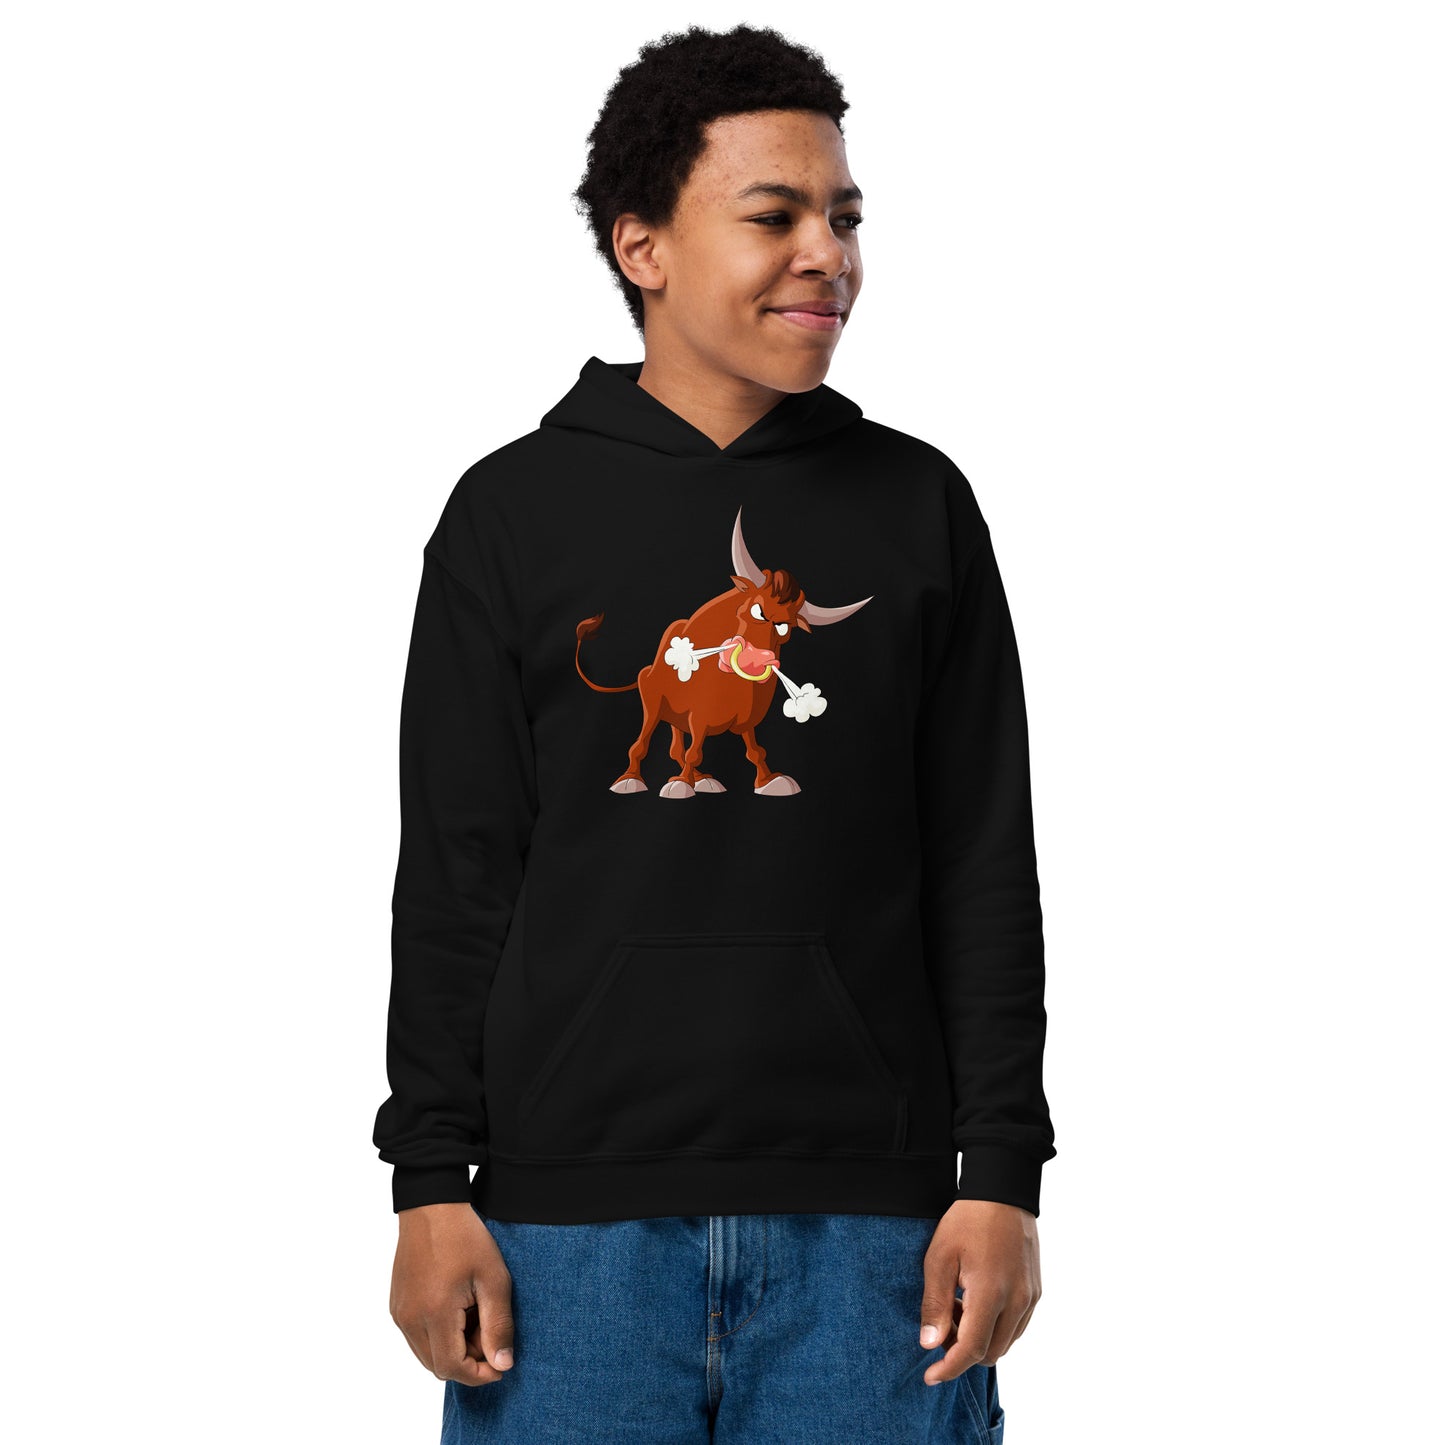 Black kids hoodie with bull